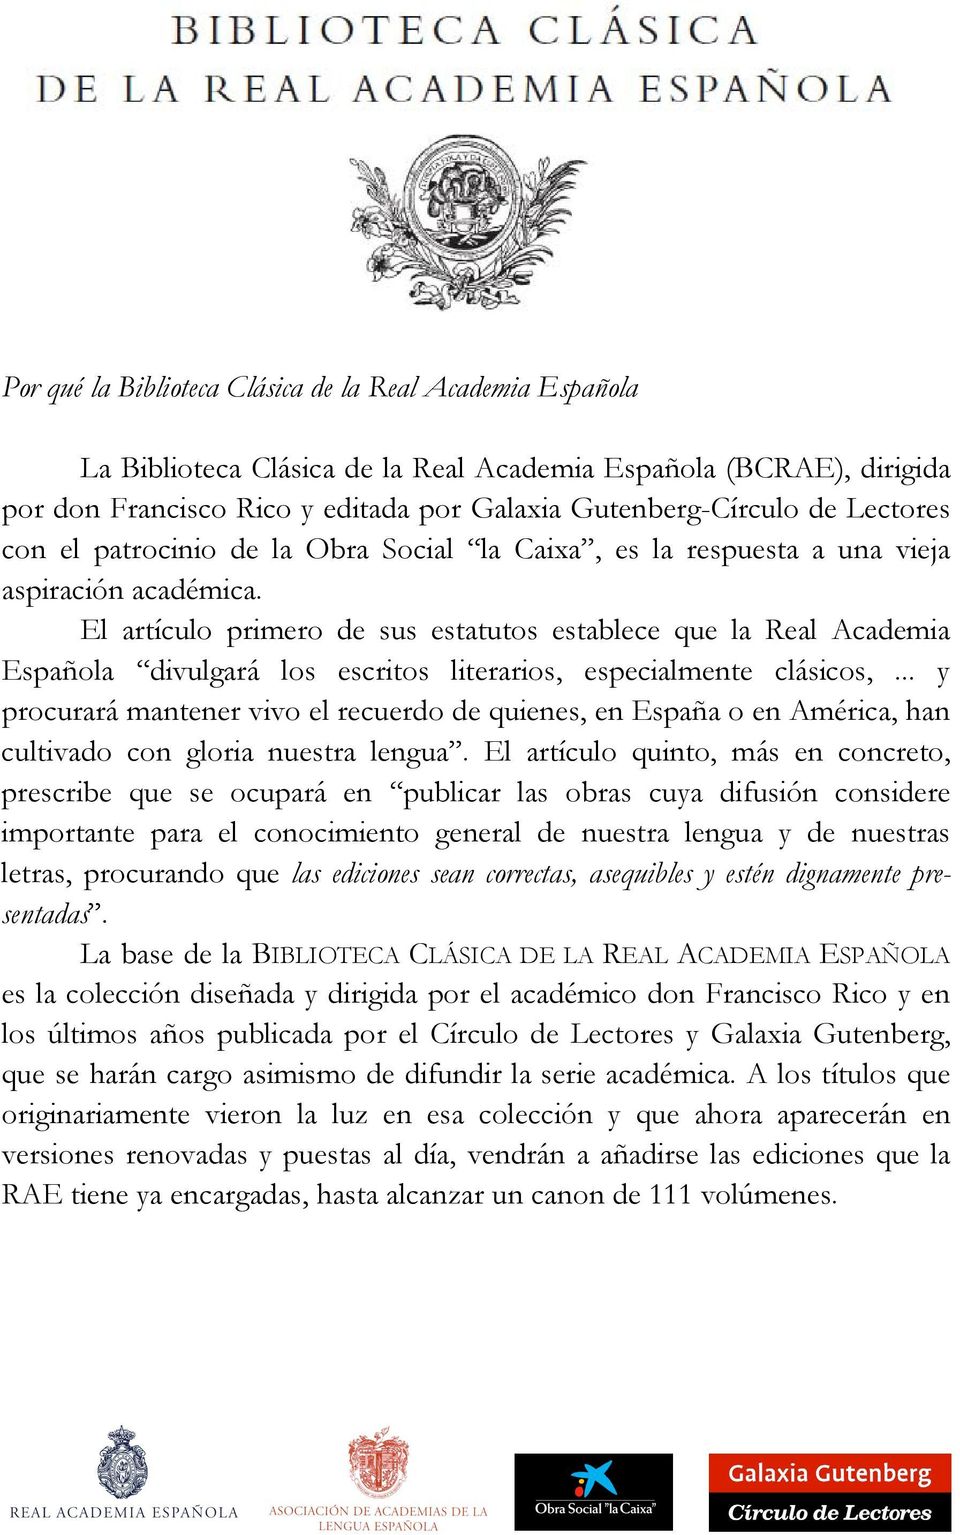 El artículo primero de sus estatutos establece que la Real Academia Española divulgará los escritos literarios, especialmente clásicos,.